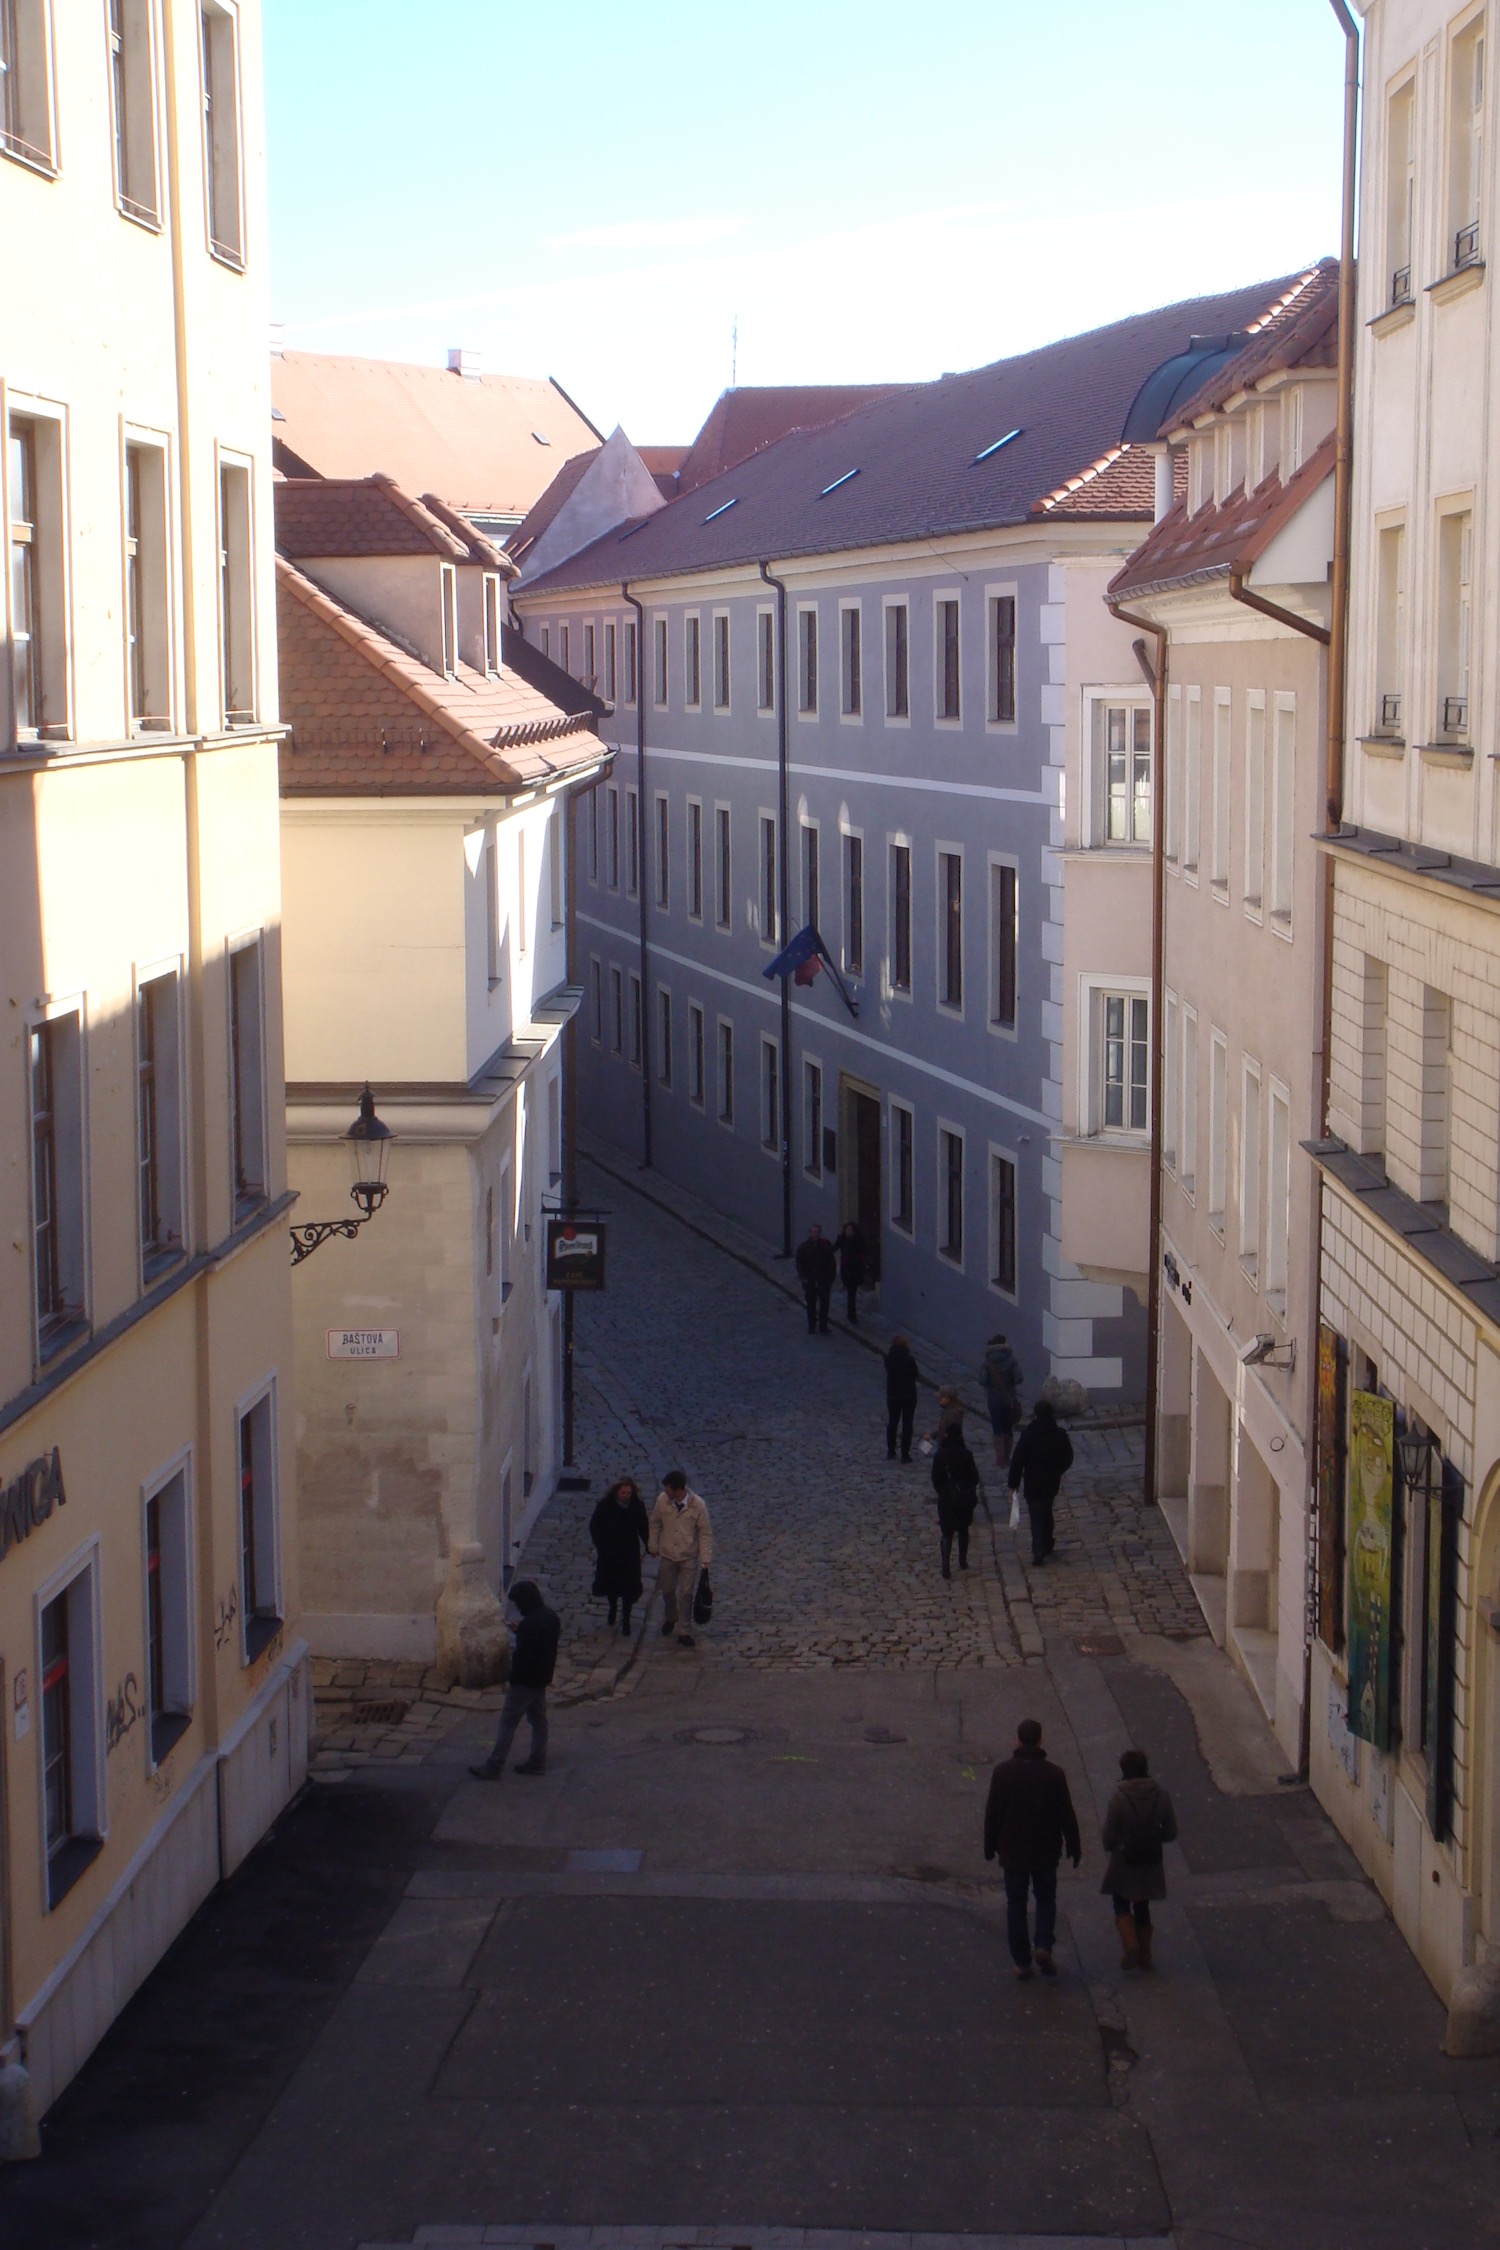 a group of people walking down a narrow street between buildings